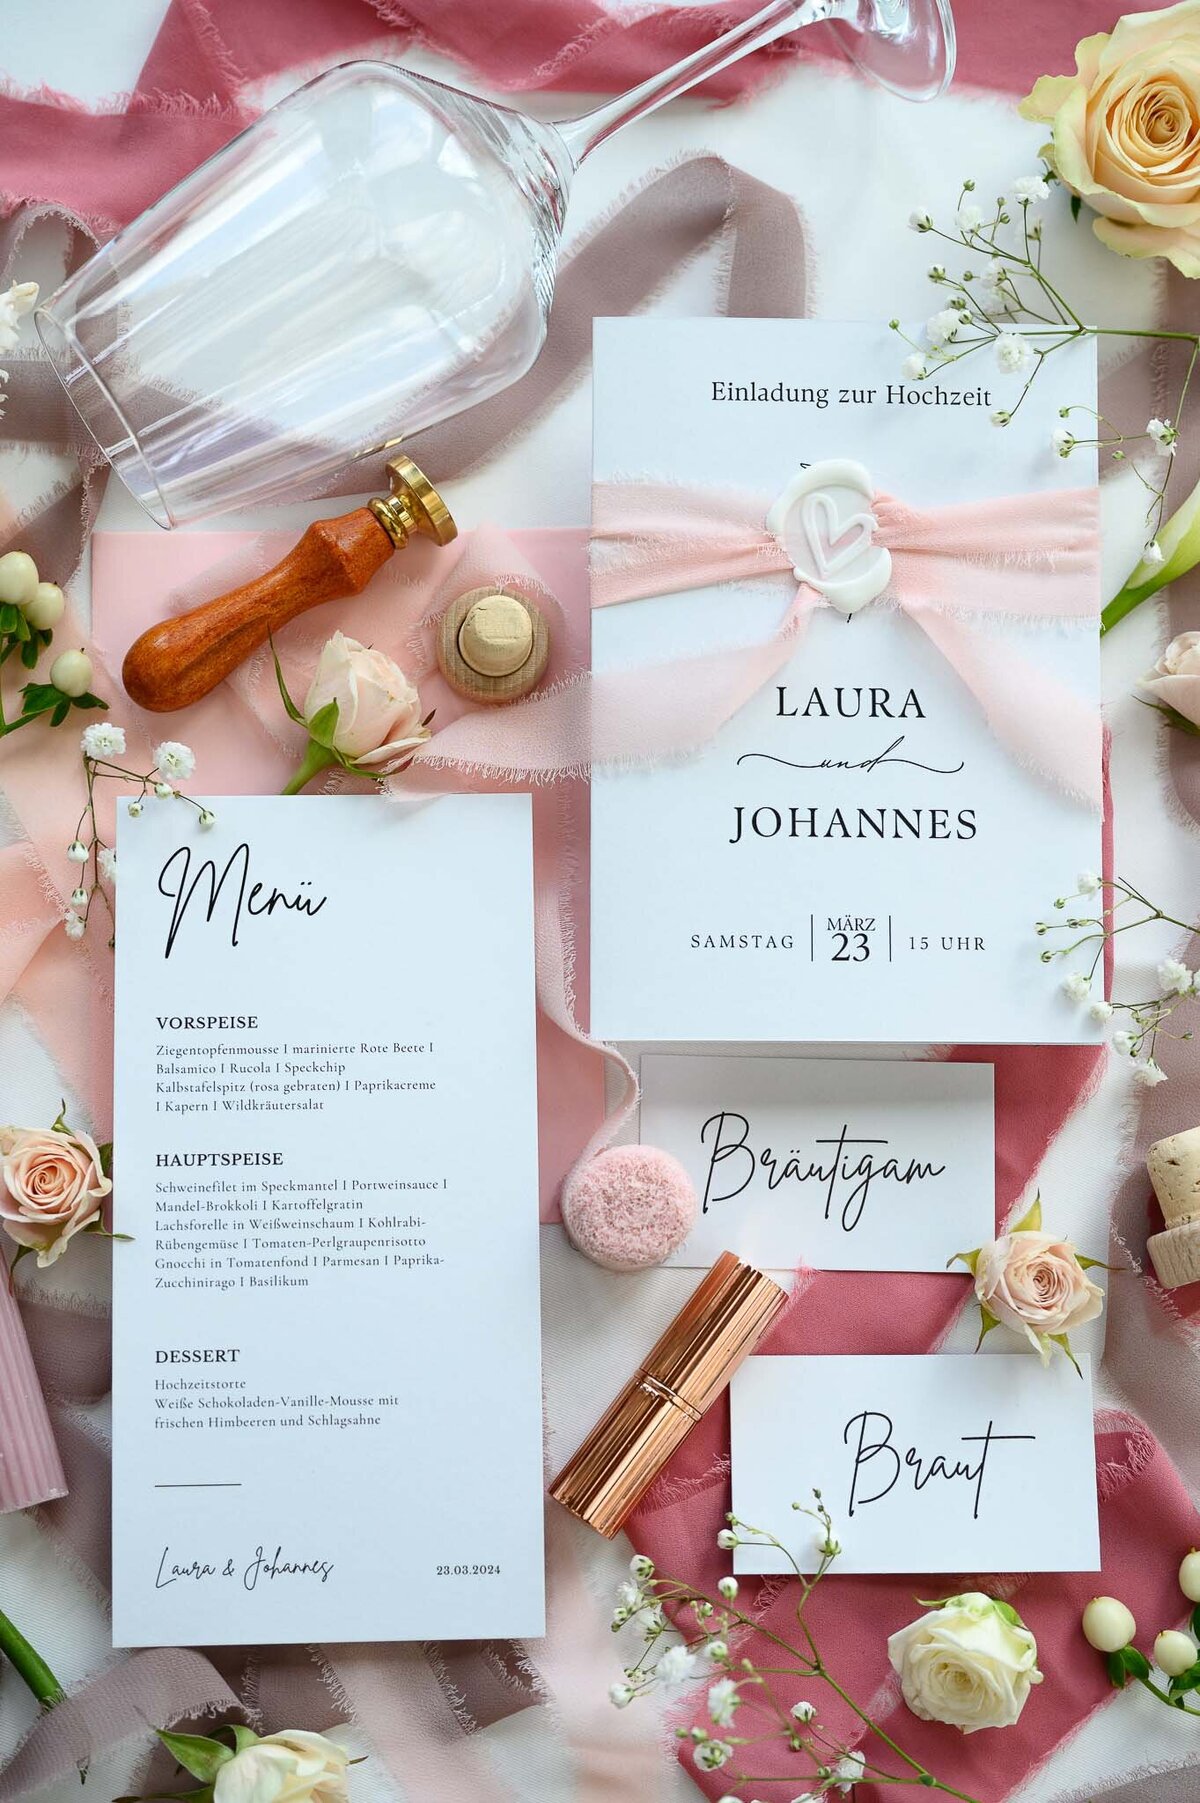 Papeterie einer Hochzeit angerichtet mit Blumen, Lippenstift und Dekoband